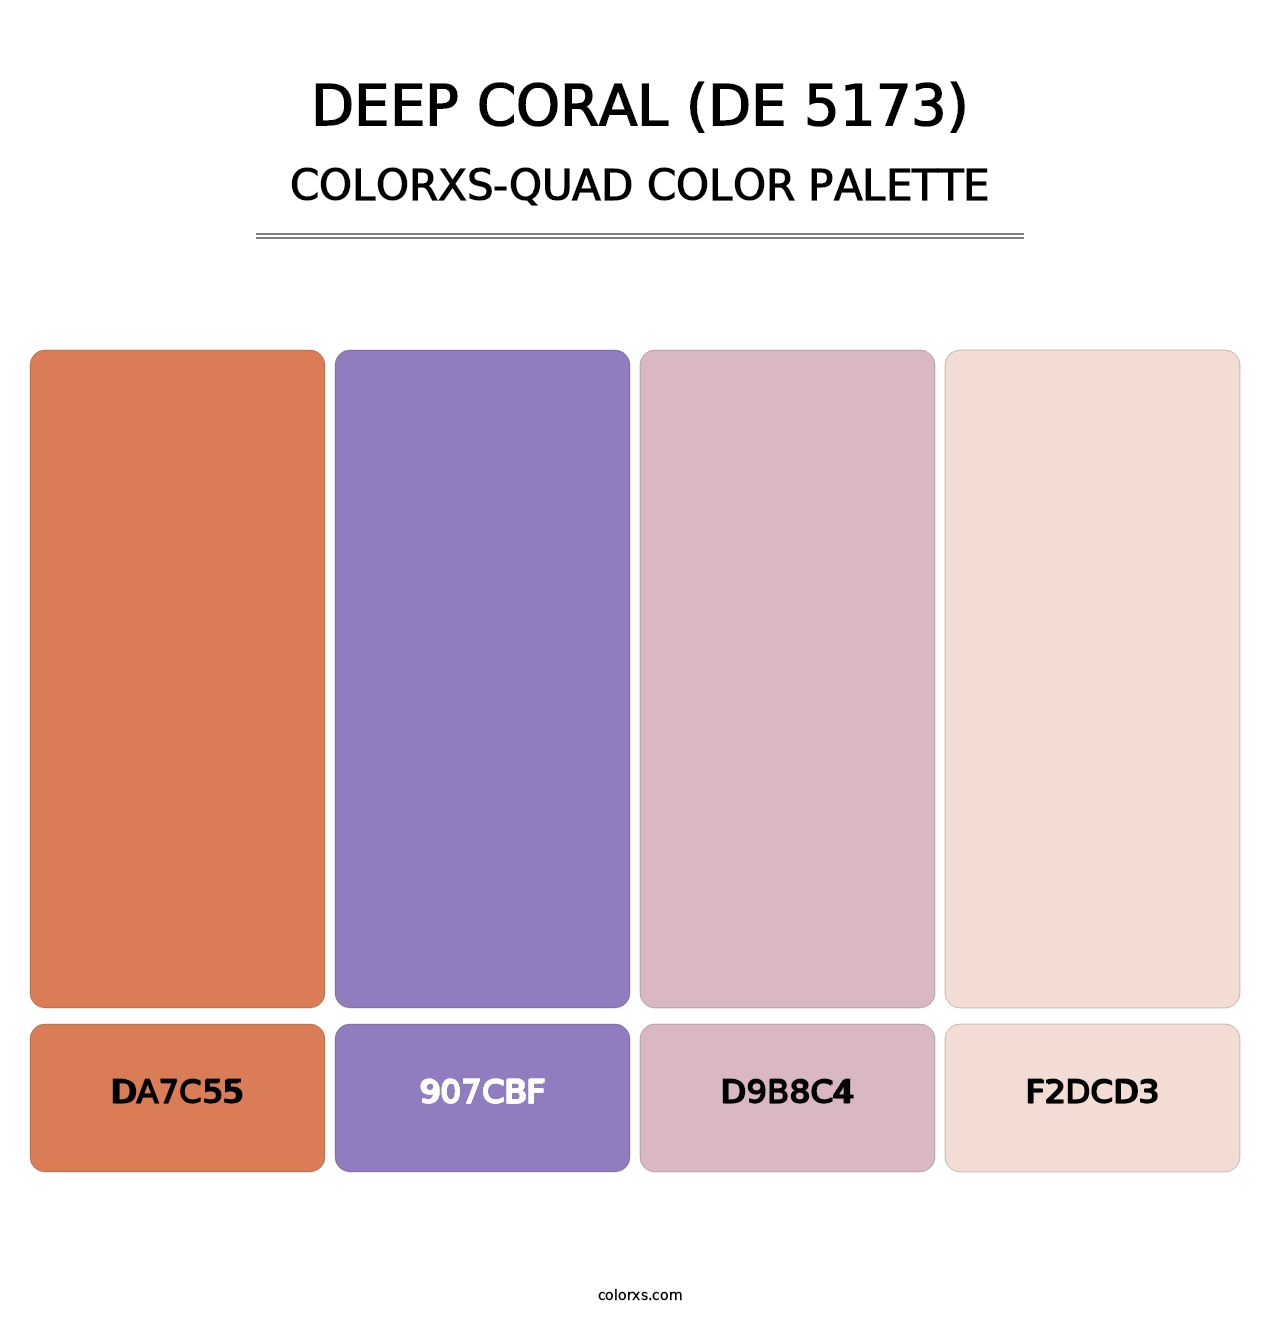 Deep Coral (DE 5173) - Colorxs Quad Palette